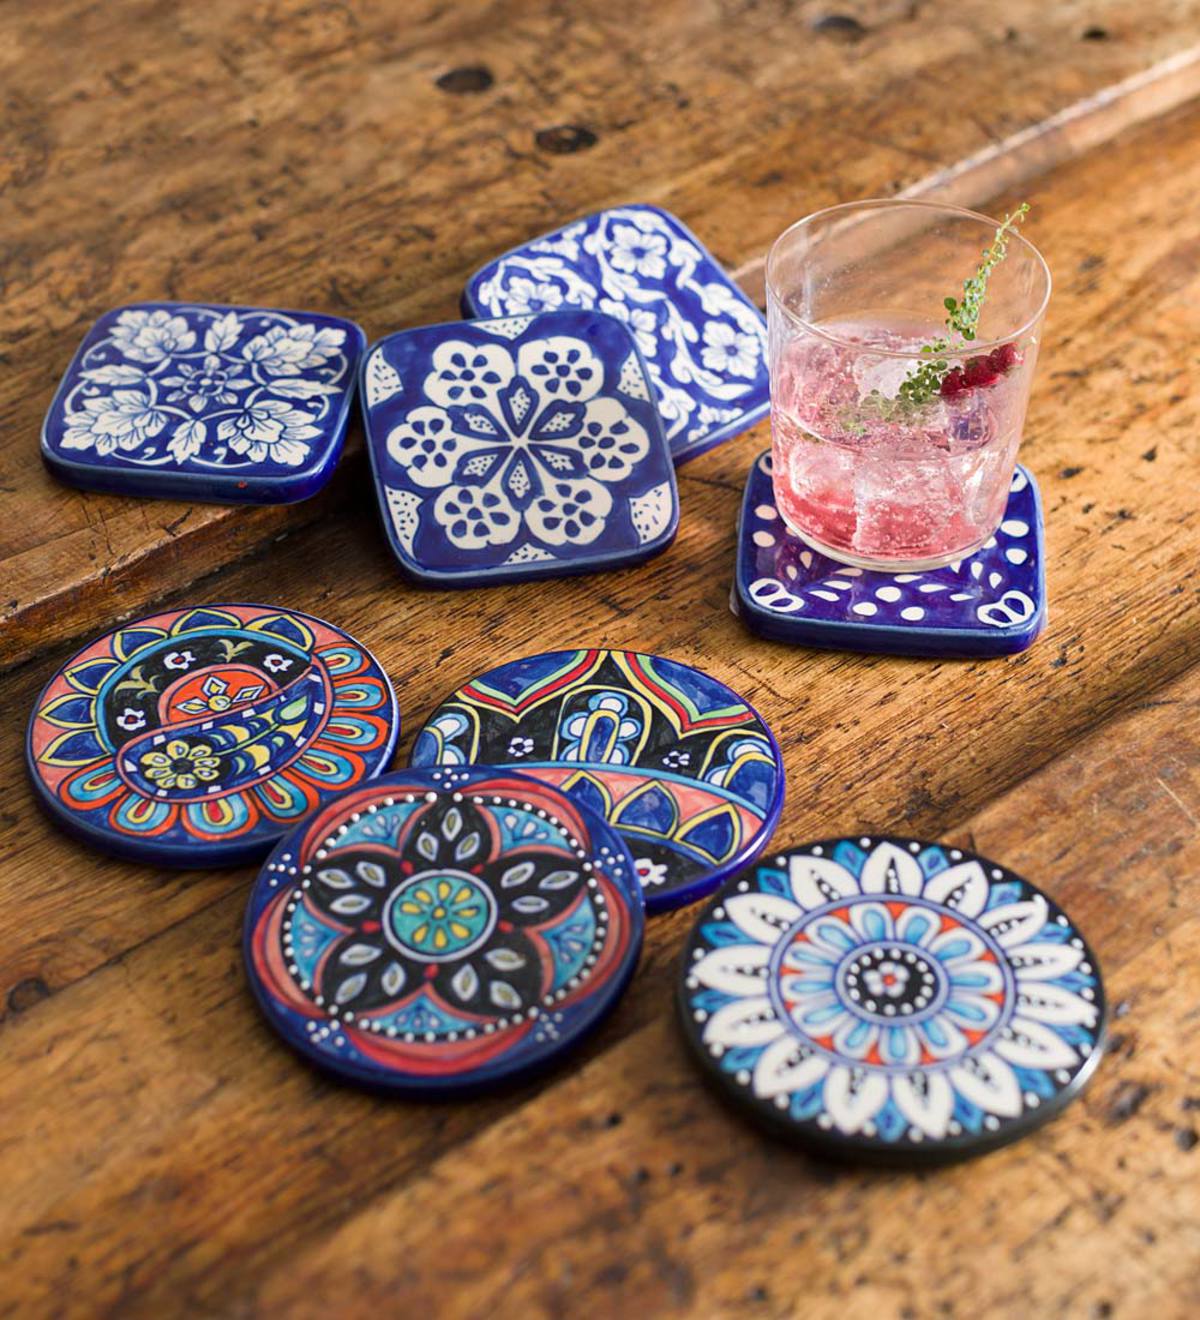 Ceramic Coasters, Set of 4